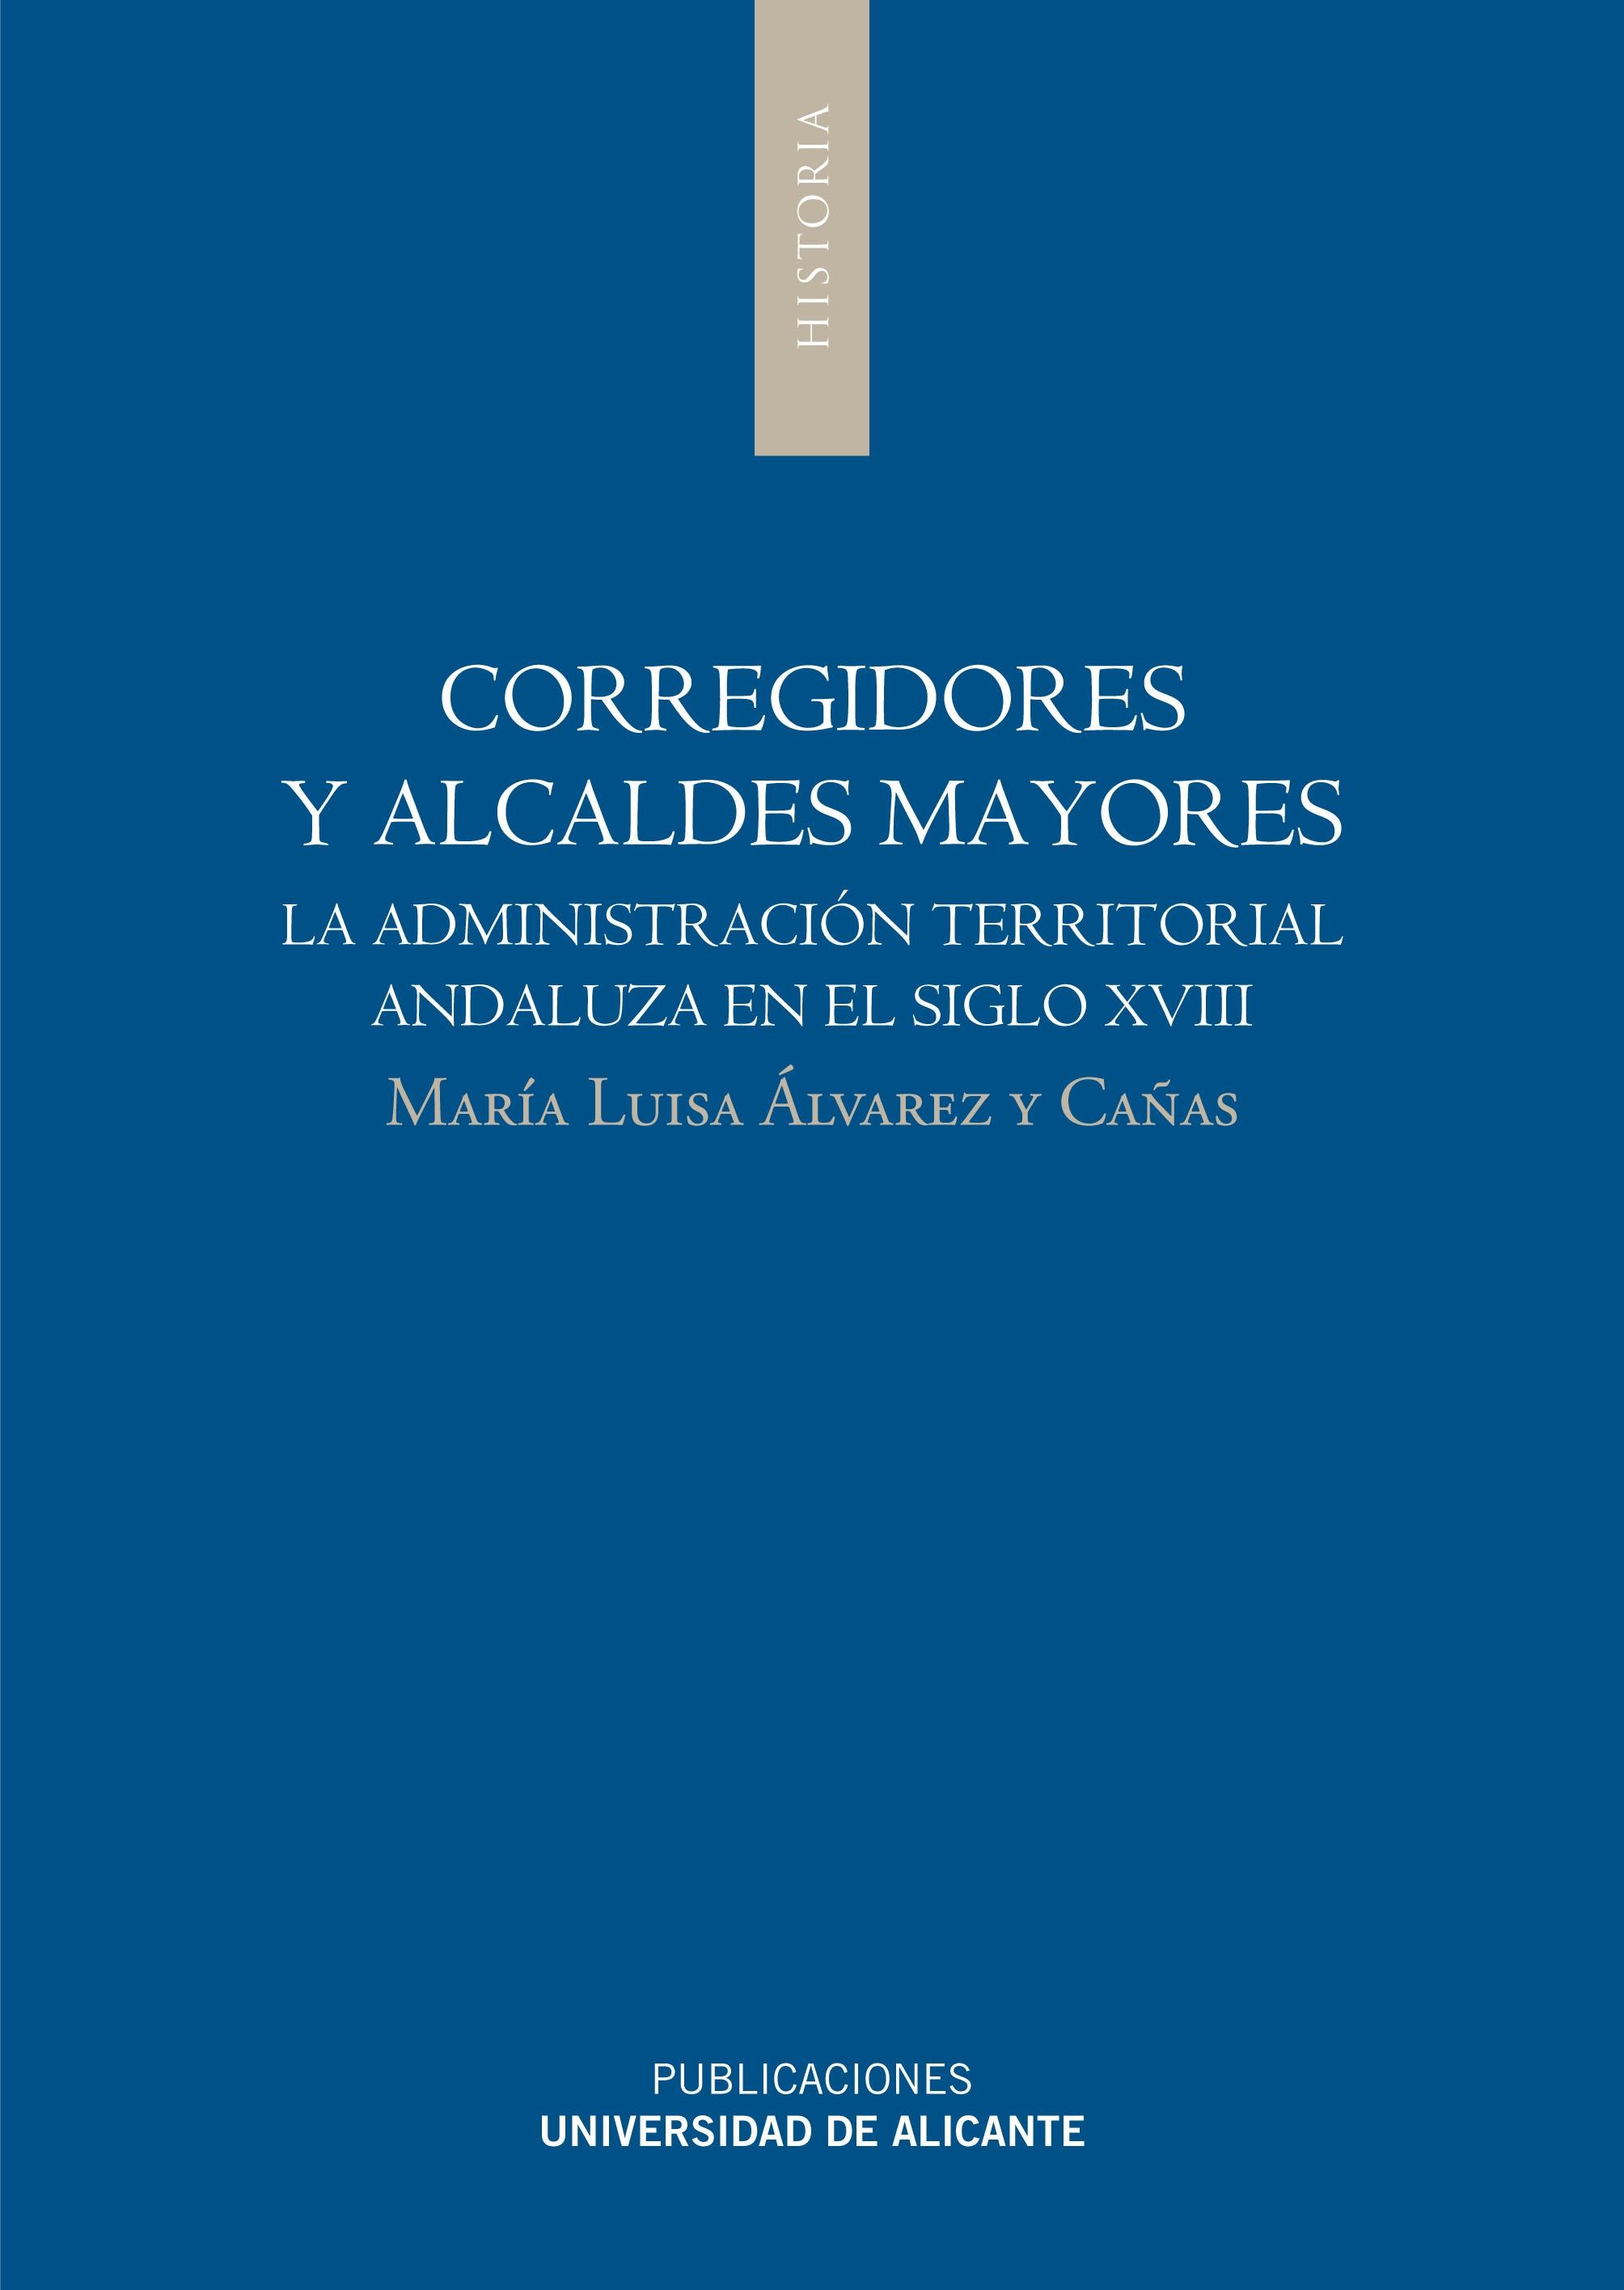 Corregidores y Alcaldes Mayores "La Administración territorial andaluza en el siglo XVIII"